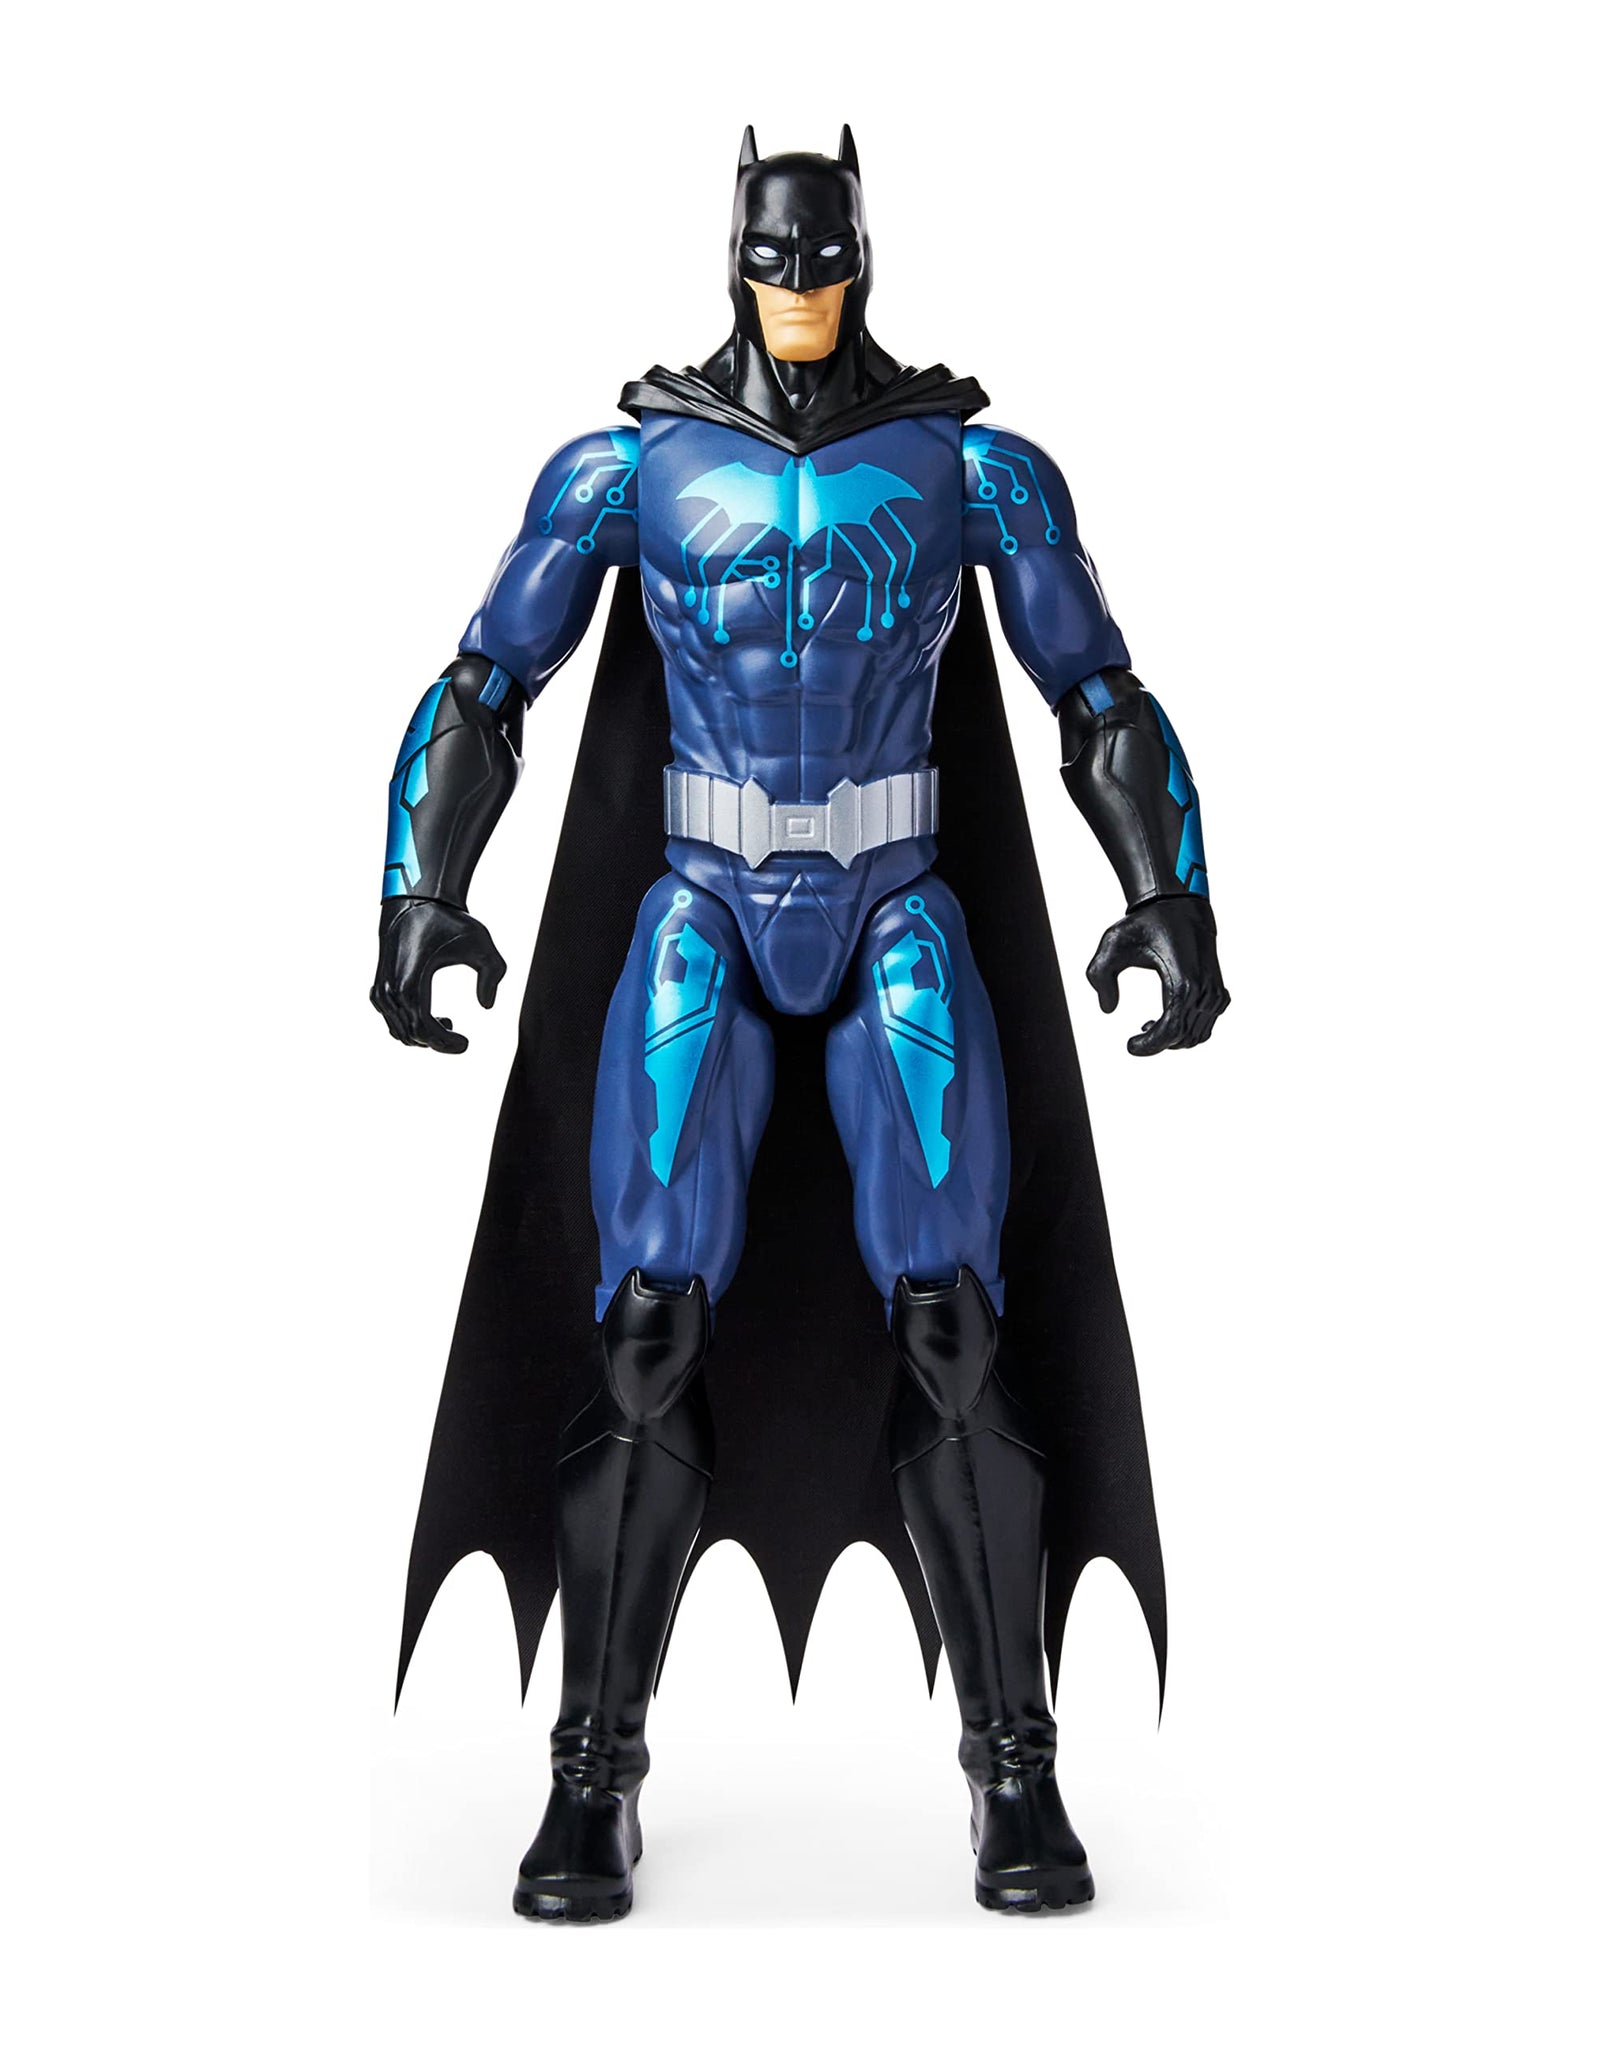 DC Comics Batman 12-inch Bat-Tech Action Figure (Black/Blue Suit), Kids Toys for Boys Aged 3 and up